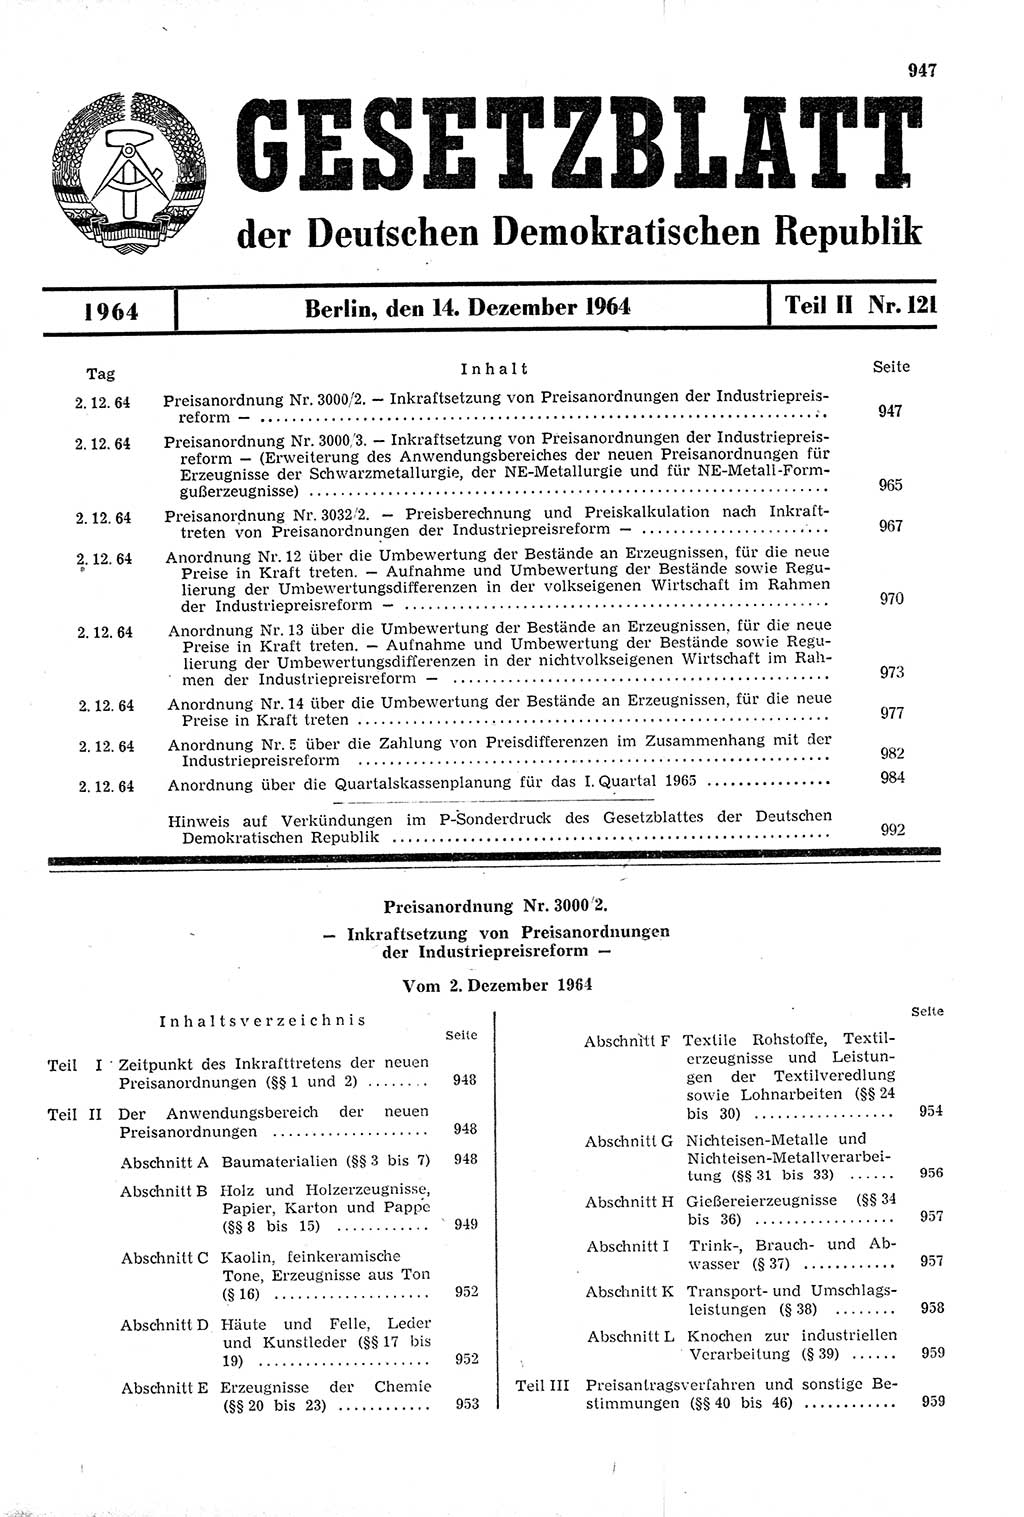 Gesetzblatt (GBl.) der Deutschen Demokratischen Republik (DDR) Teil ⅠⅠ 1964, Seite 947 (GBl. DDR ⅠⅠ 1964, S. 947)